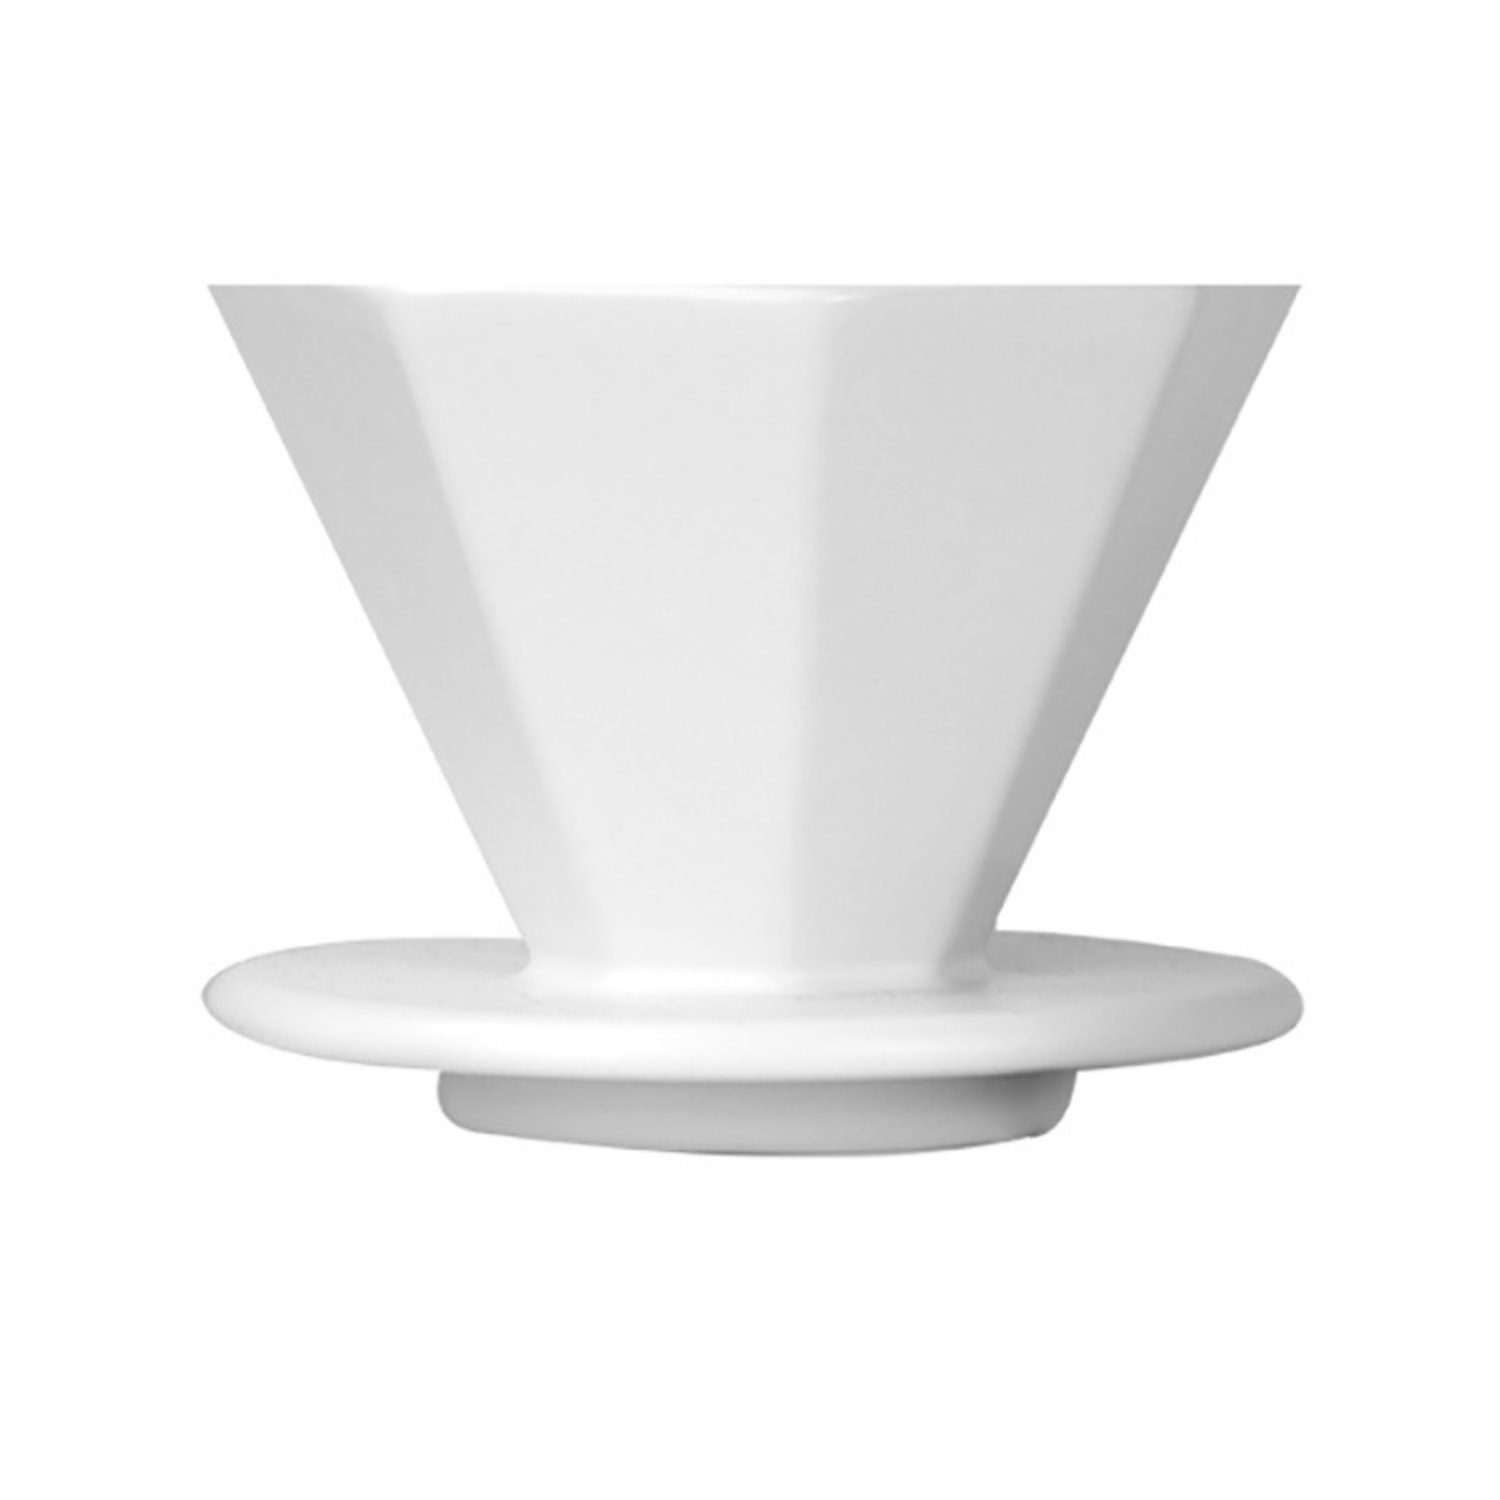  Hario V60 - Cafetera de cerámica para verter sobre